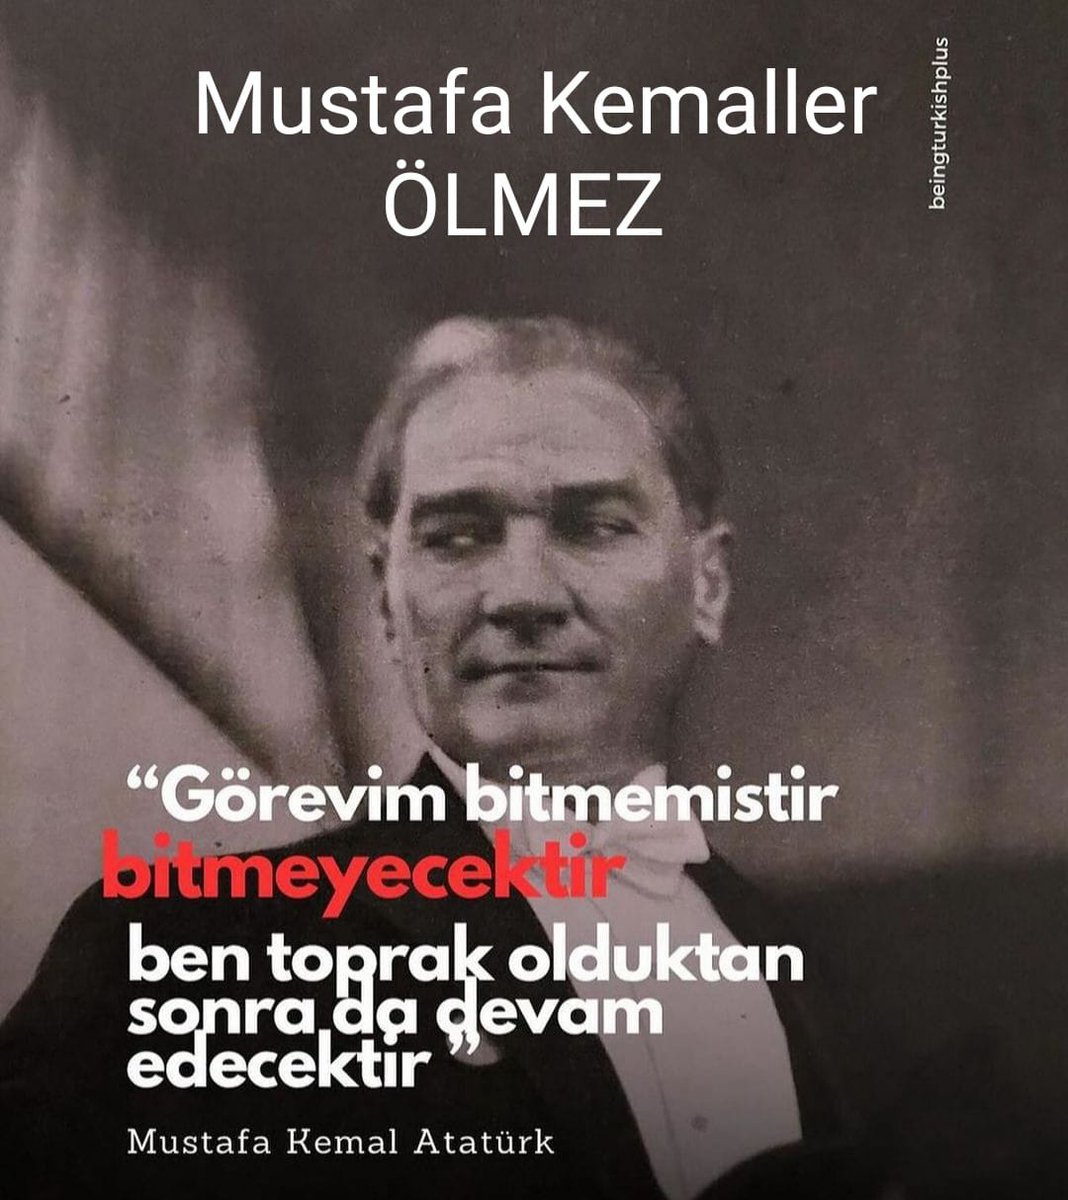 Hayal kurmayı öğren çocuk Ütopik bir memleket hayali Sonra üzerinizdeki o ölü toprağını at Bir şeyler yap Bir kelebek etkisi yarat Atatürk'ü düşün mesela Zahmet, dirayet ve akıl etmeseydiyi düşün Bu sekilde yaşayıp böyle ölmeye hakkın yok Mustafa Kemaller ÖLMEZ